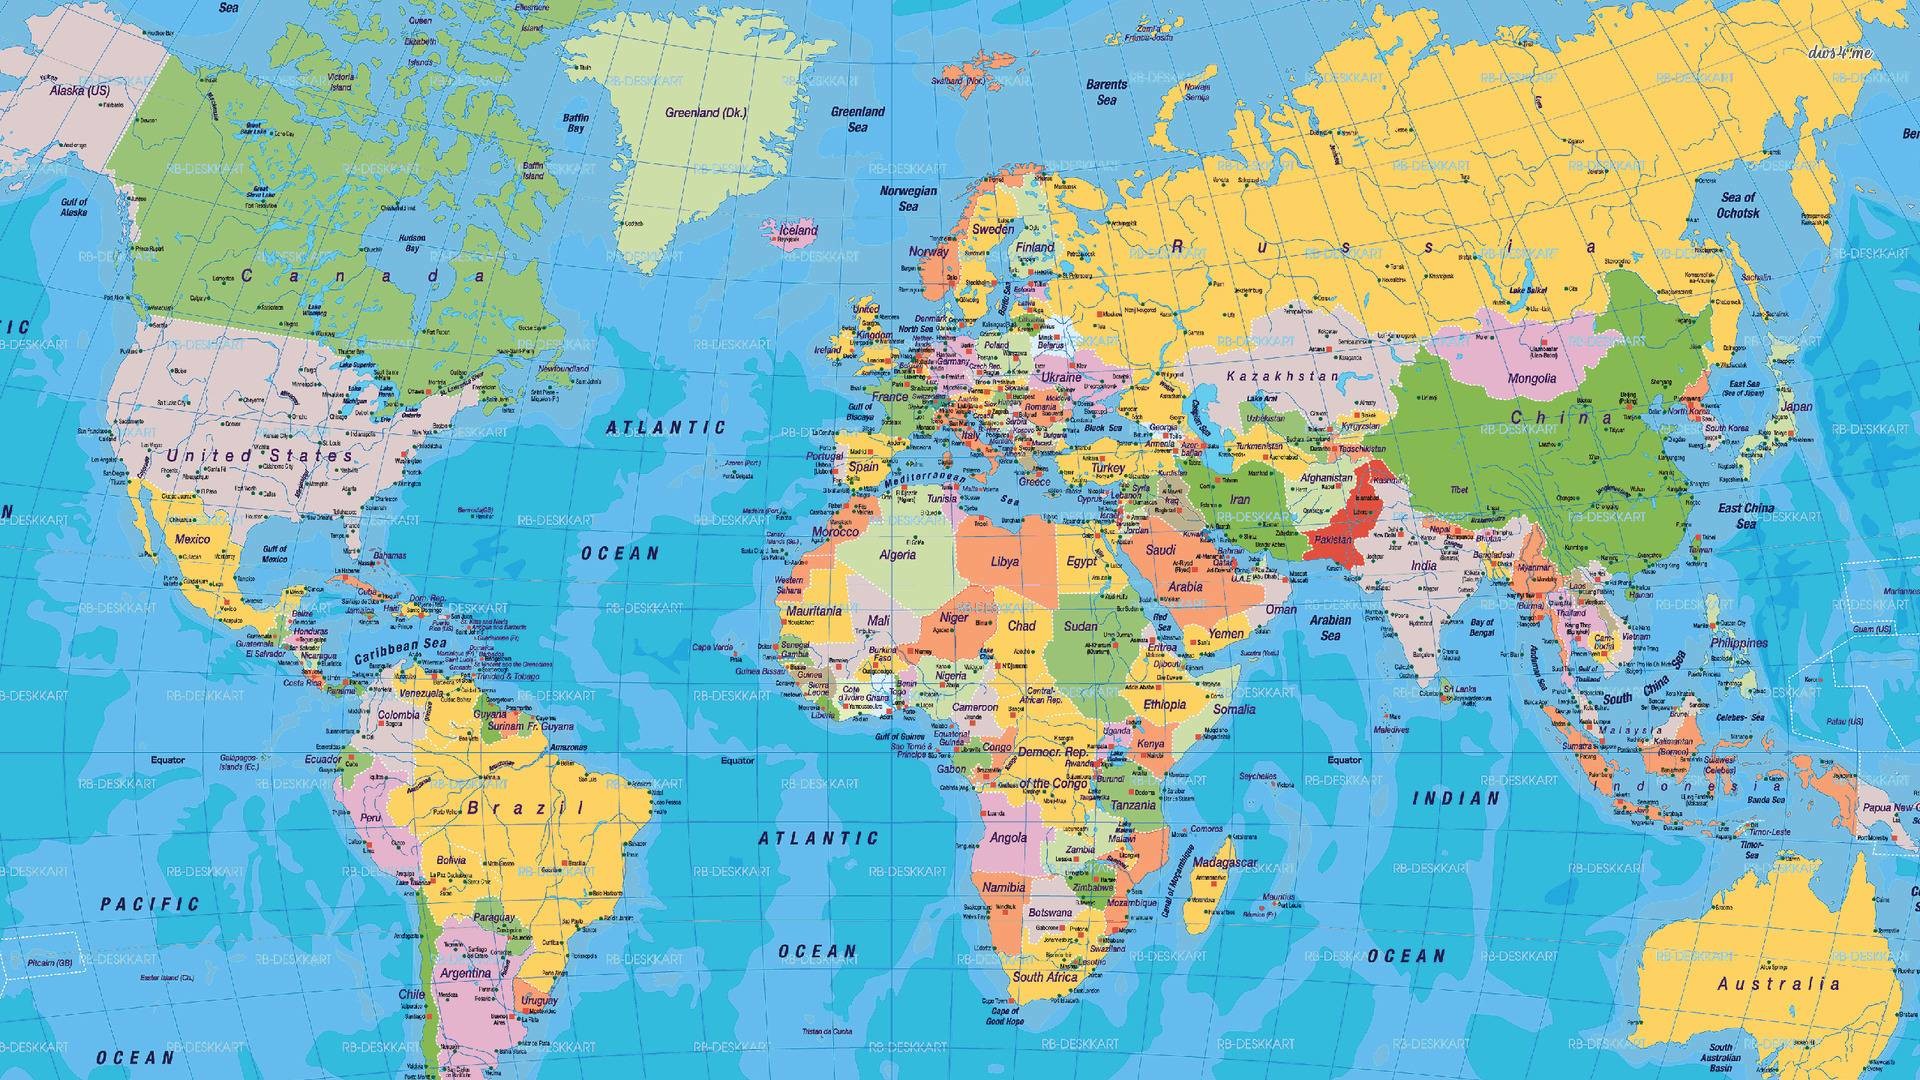 1920x1080 World map wallpaper - Digital Art wallpapers - #